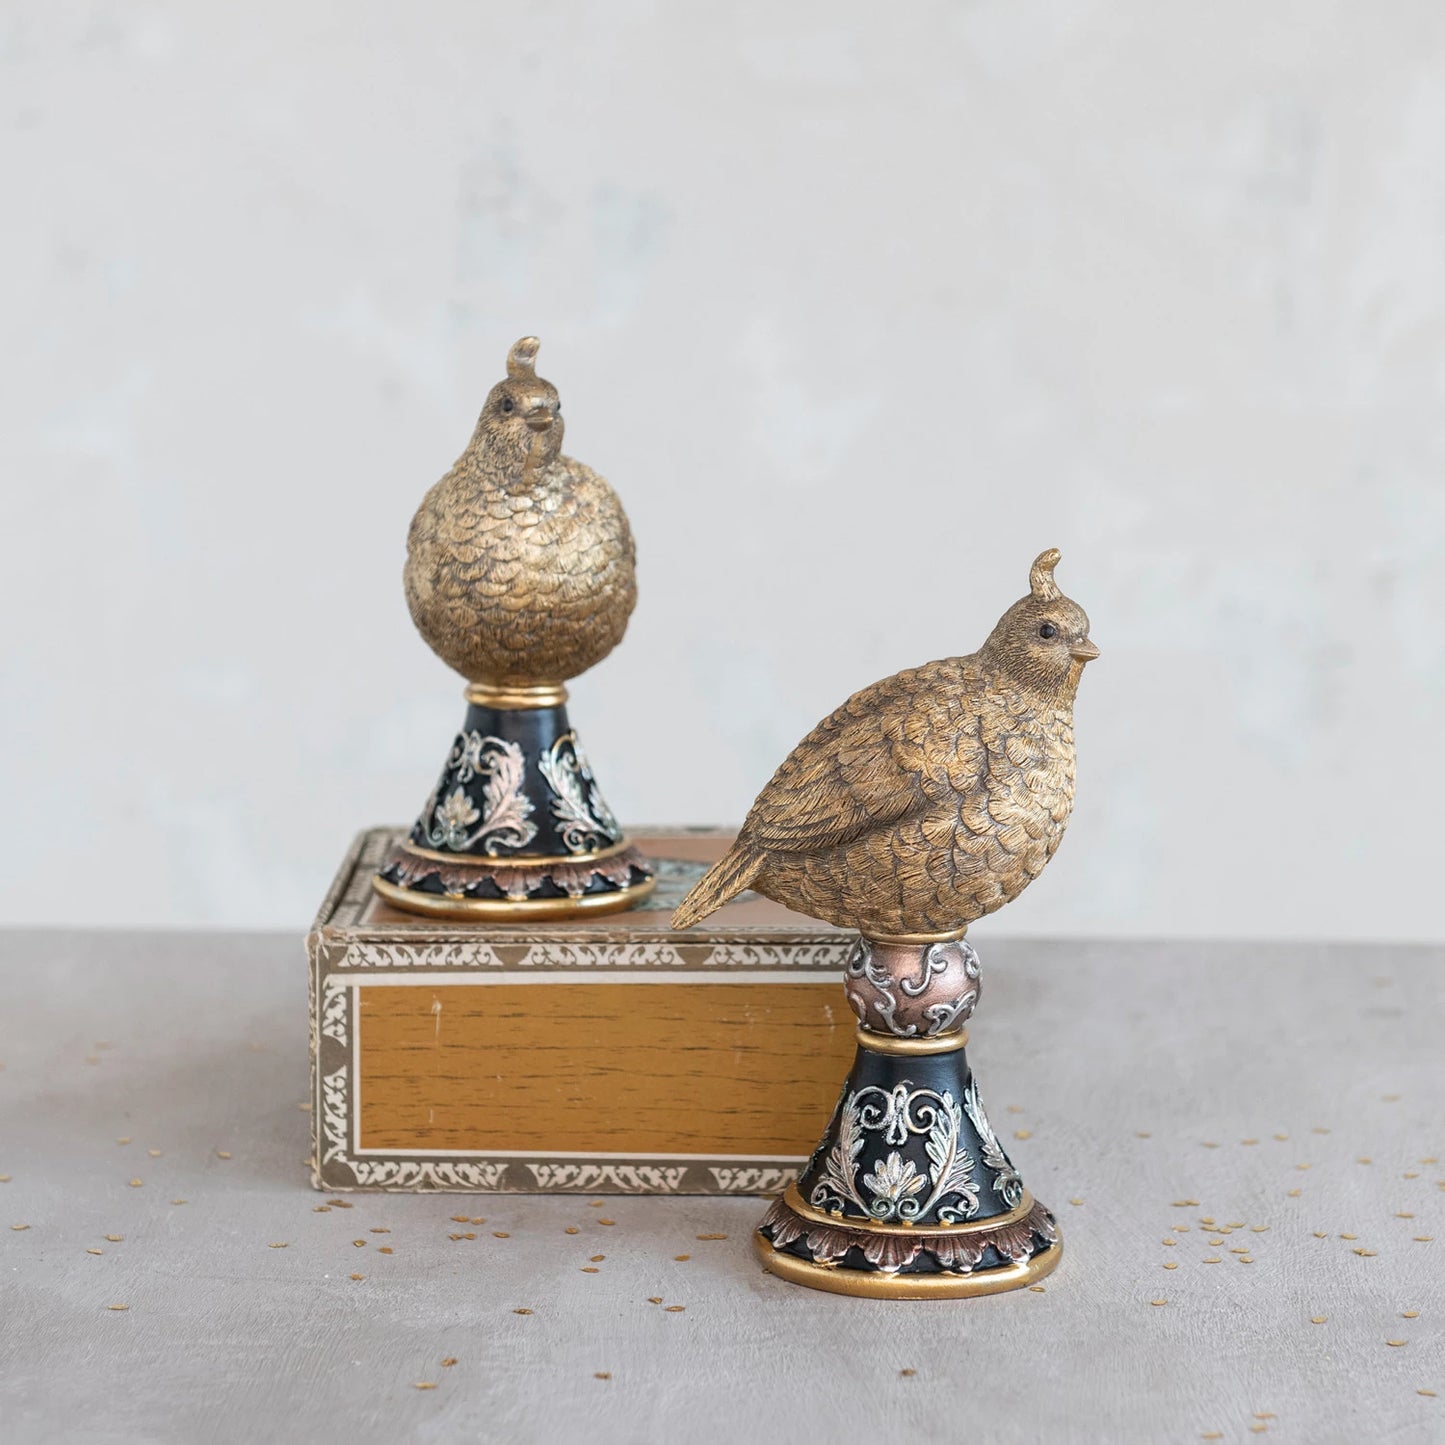 Pheasant on Pedestal, The Feathered Farmhouse